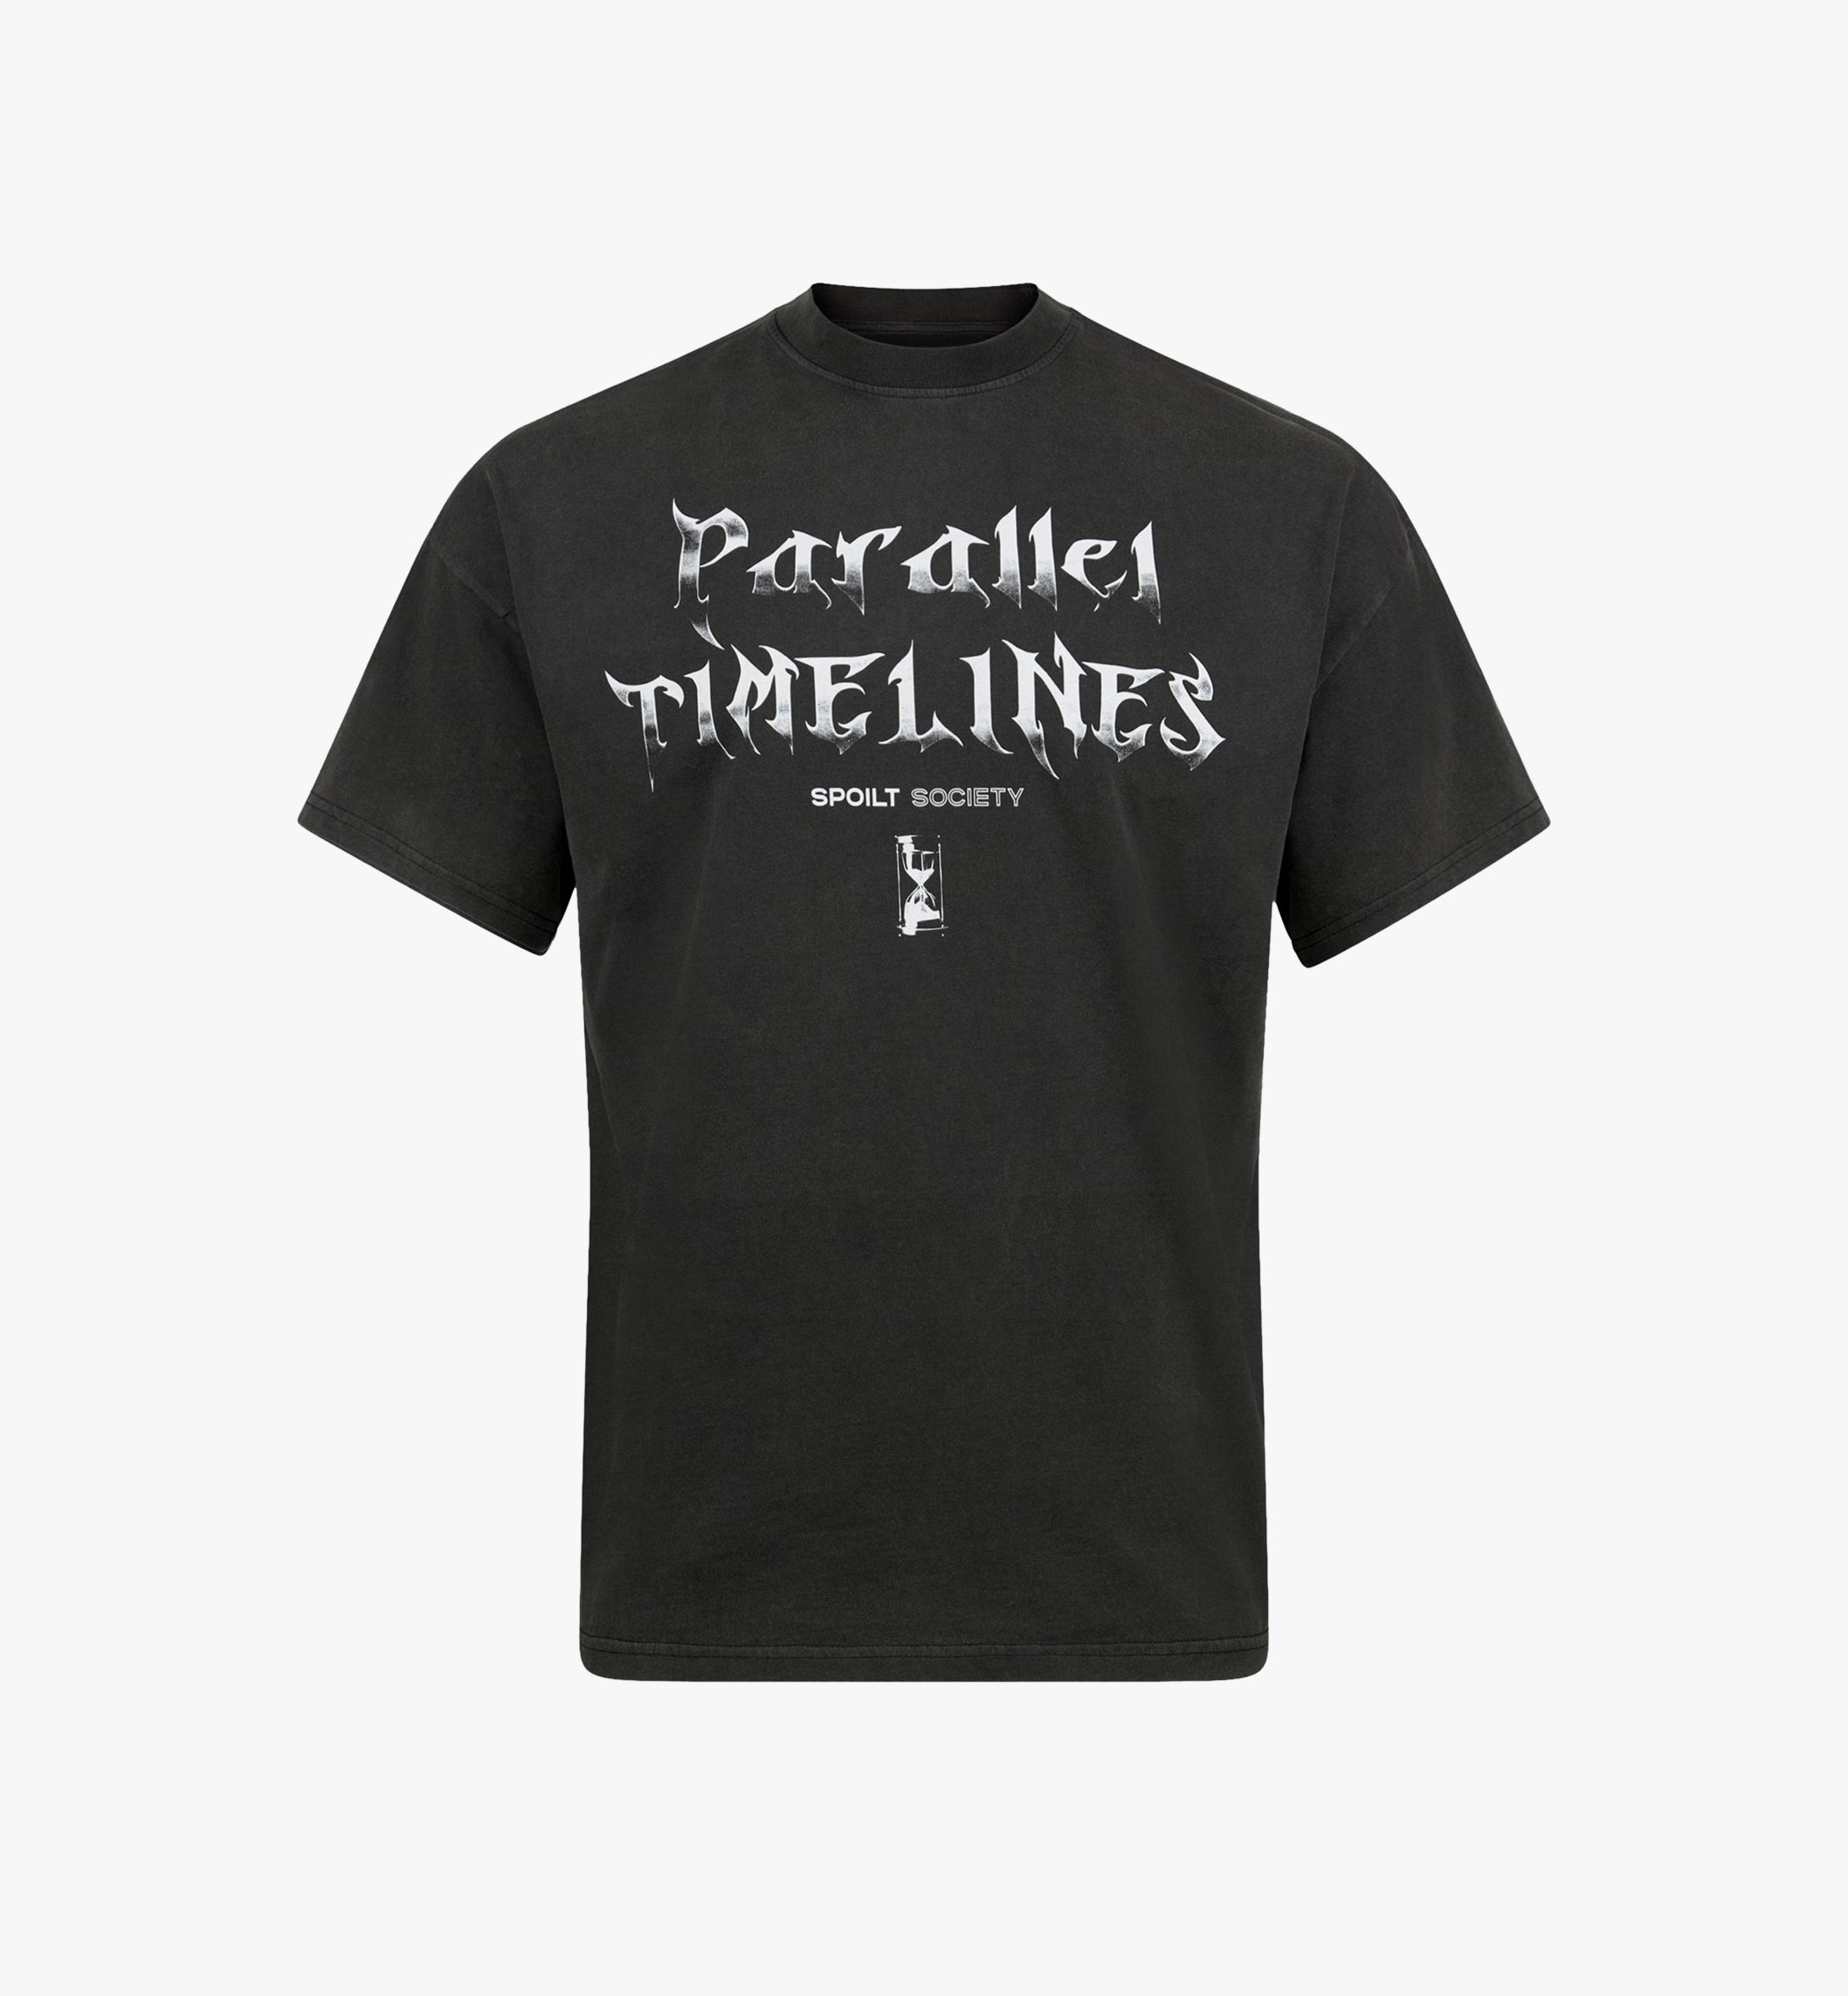 T-Shirt "PARALLEL TIMELINES" vintage black